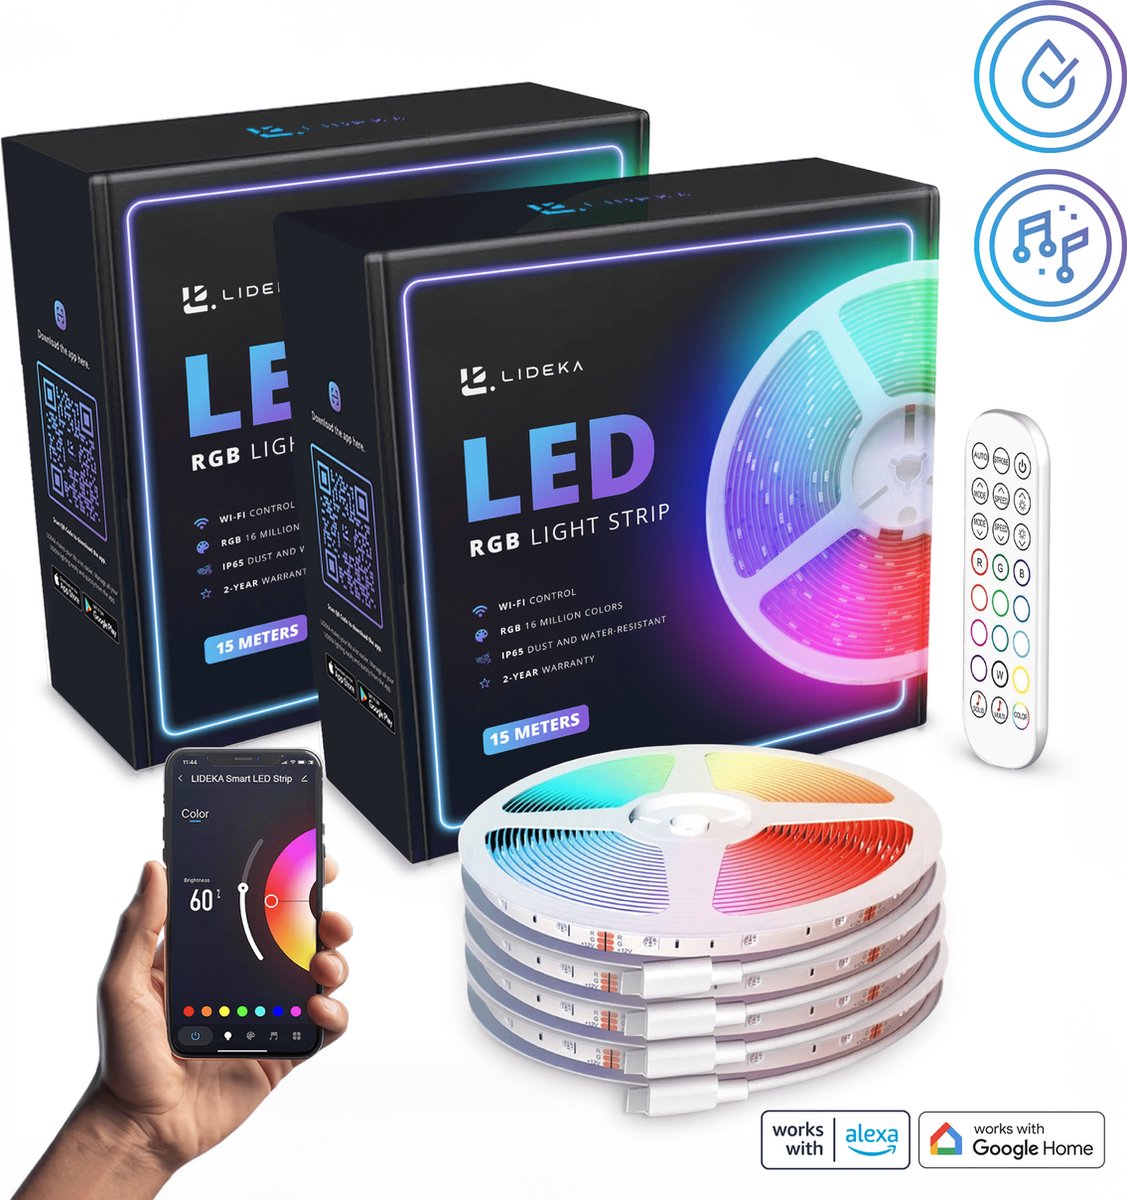 Lideka - LED Strip 30 (2x15) Meter RGB - met Afstandsbediening - Gaming Lichtstrip met App - LED-strips - Led Light Strip Verlichting - 660 LED Lights - Zelfklevend Led Licht - LIDEKA